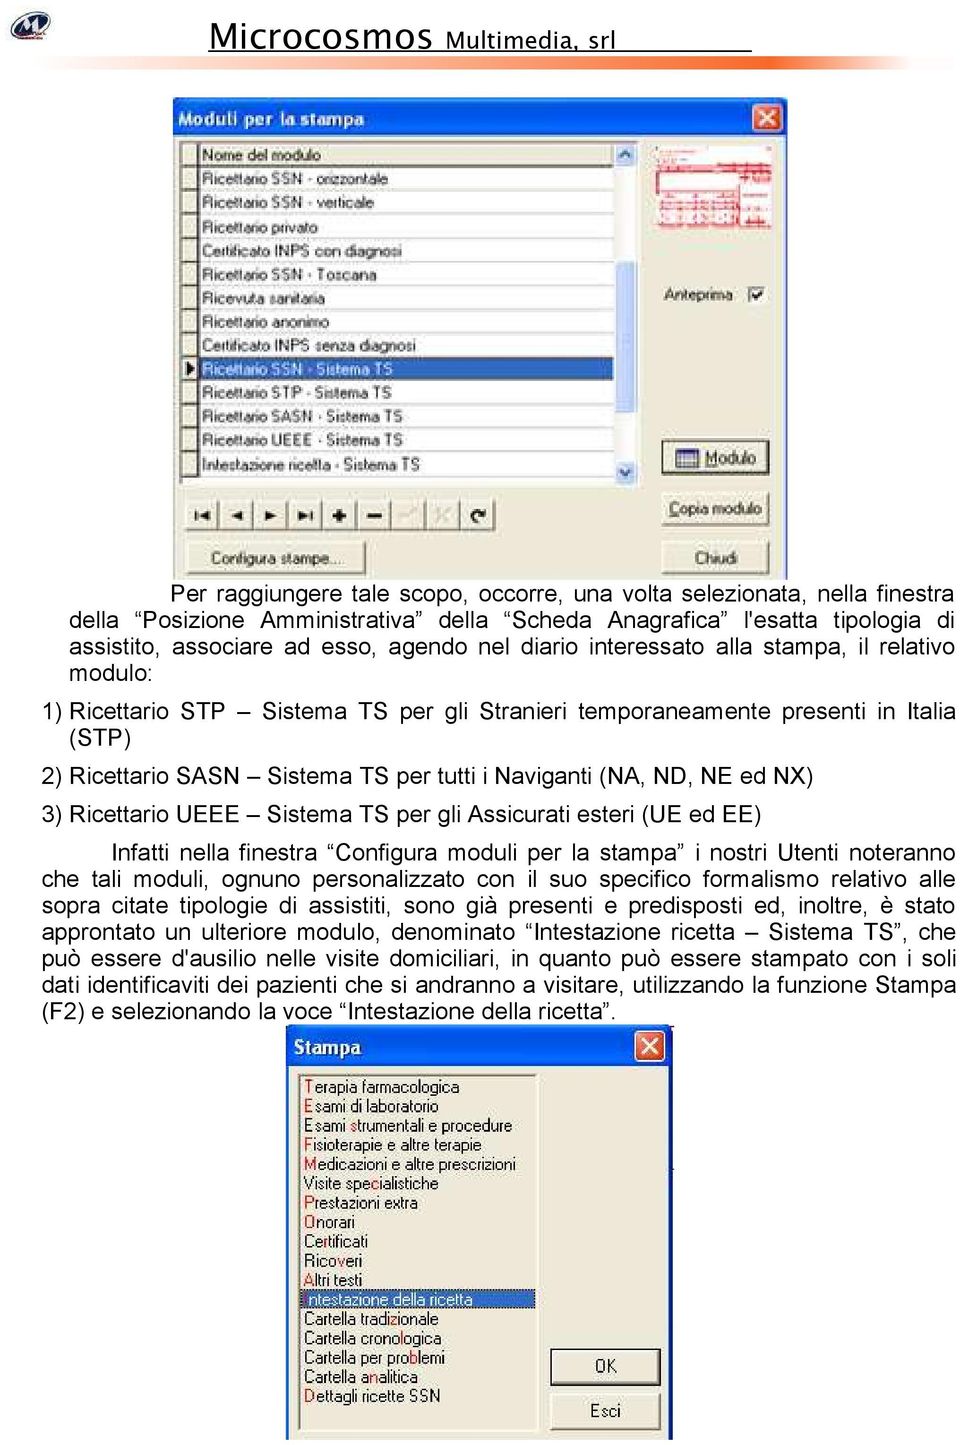 NX) 3) Ricettario UEEE Sistema TS per gli Assicurati esteri (UE ed EE) Infatti nella finestra Configura moduli per la stampa i nostri Utenti noteranno che tali moduli, ognuno personalizzato con il